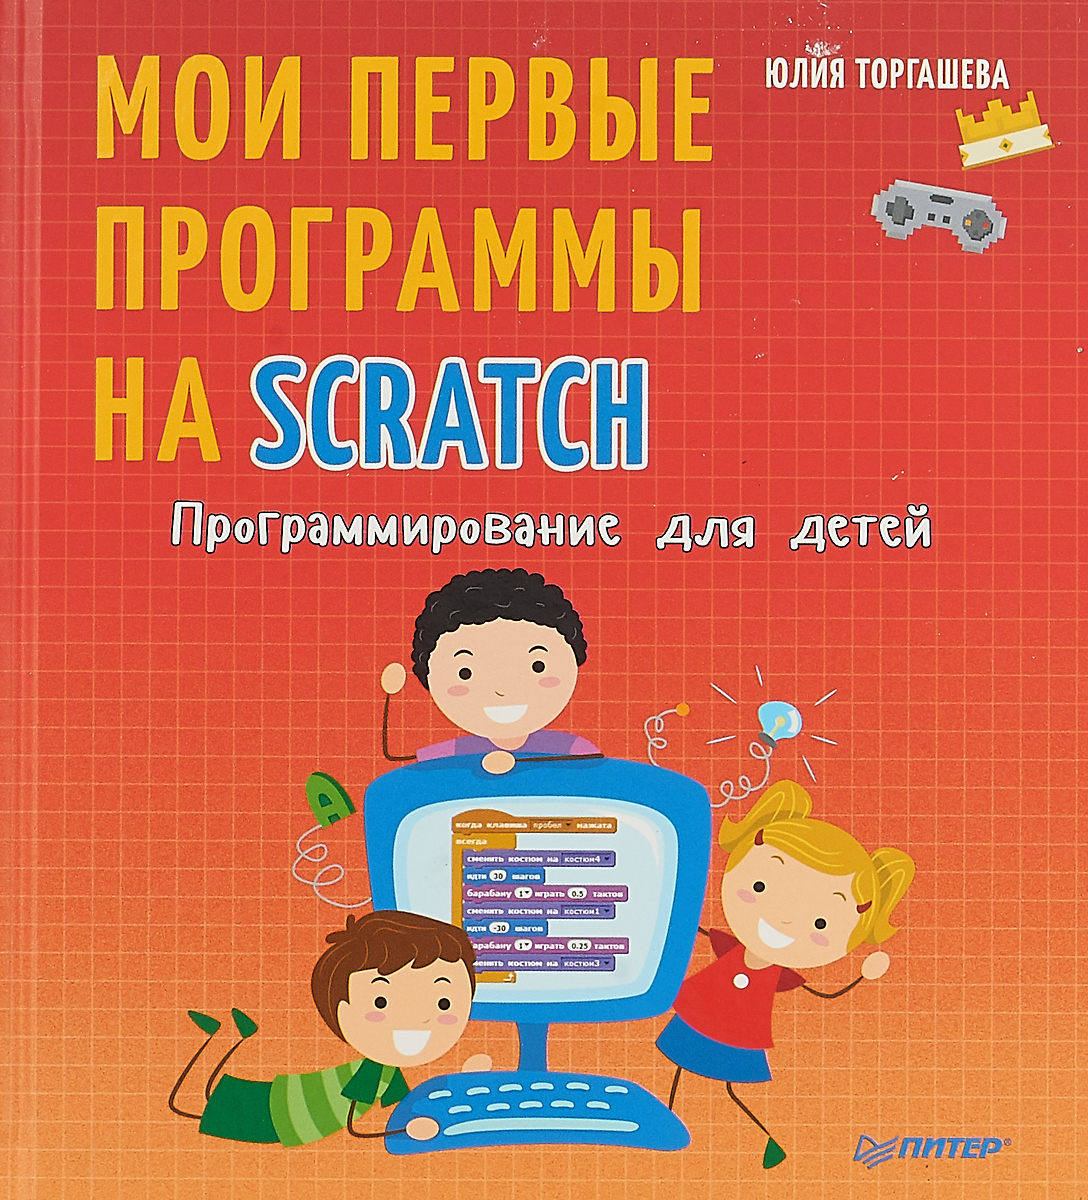 Программирование для детей. Мои первые программы на Scratch. Юлия Торгашева